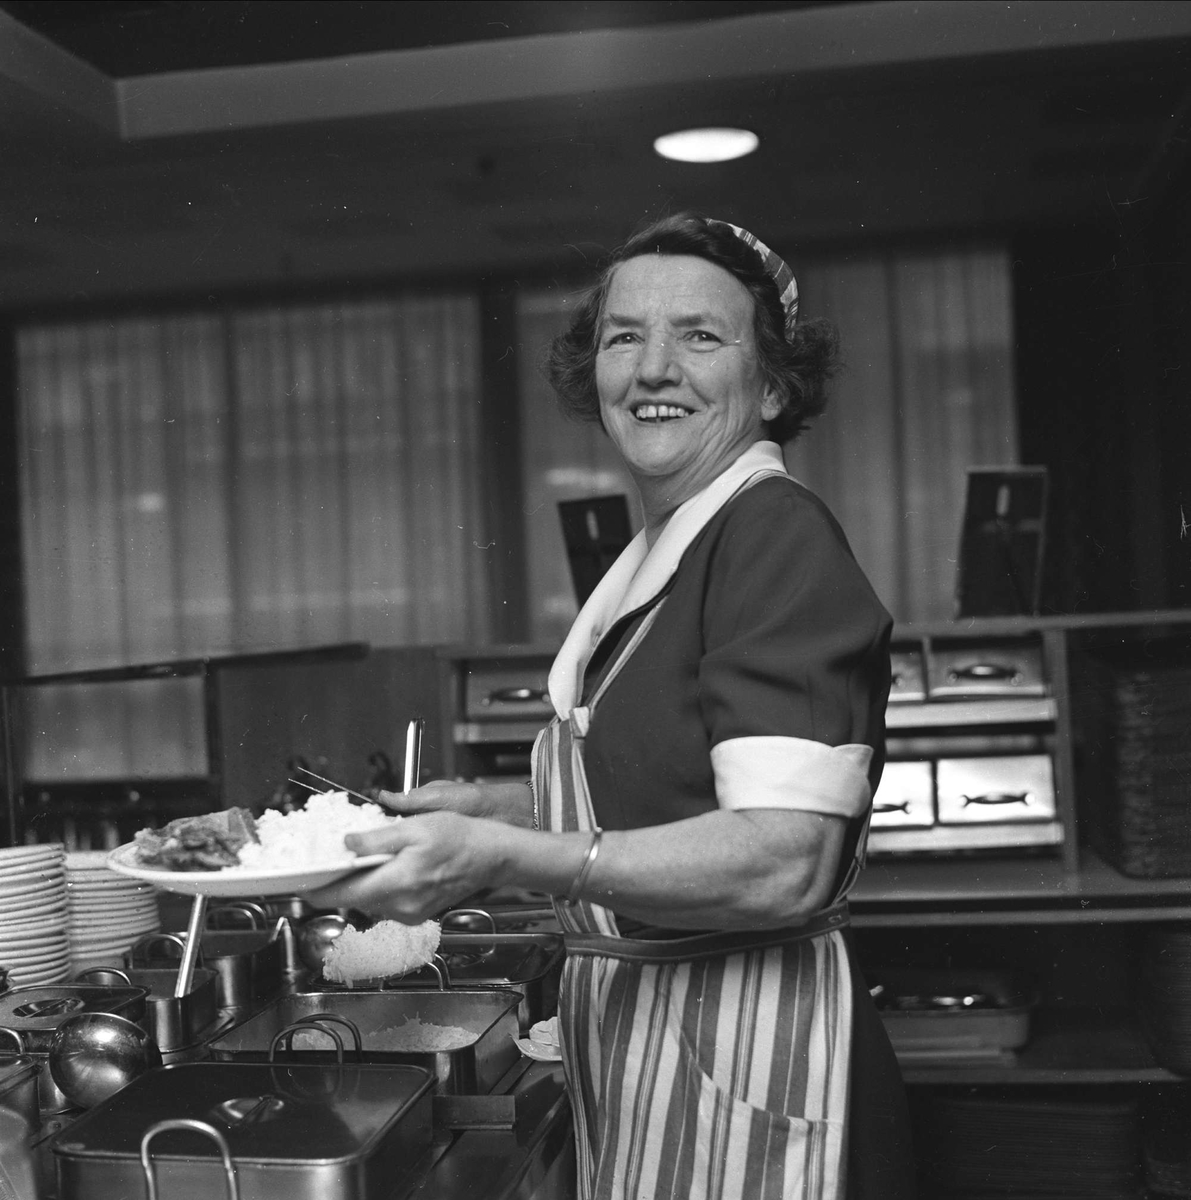 Kokk i restaurantkjøkken, ant. Oslo januar 1963.